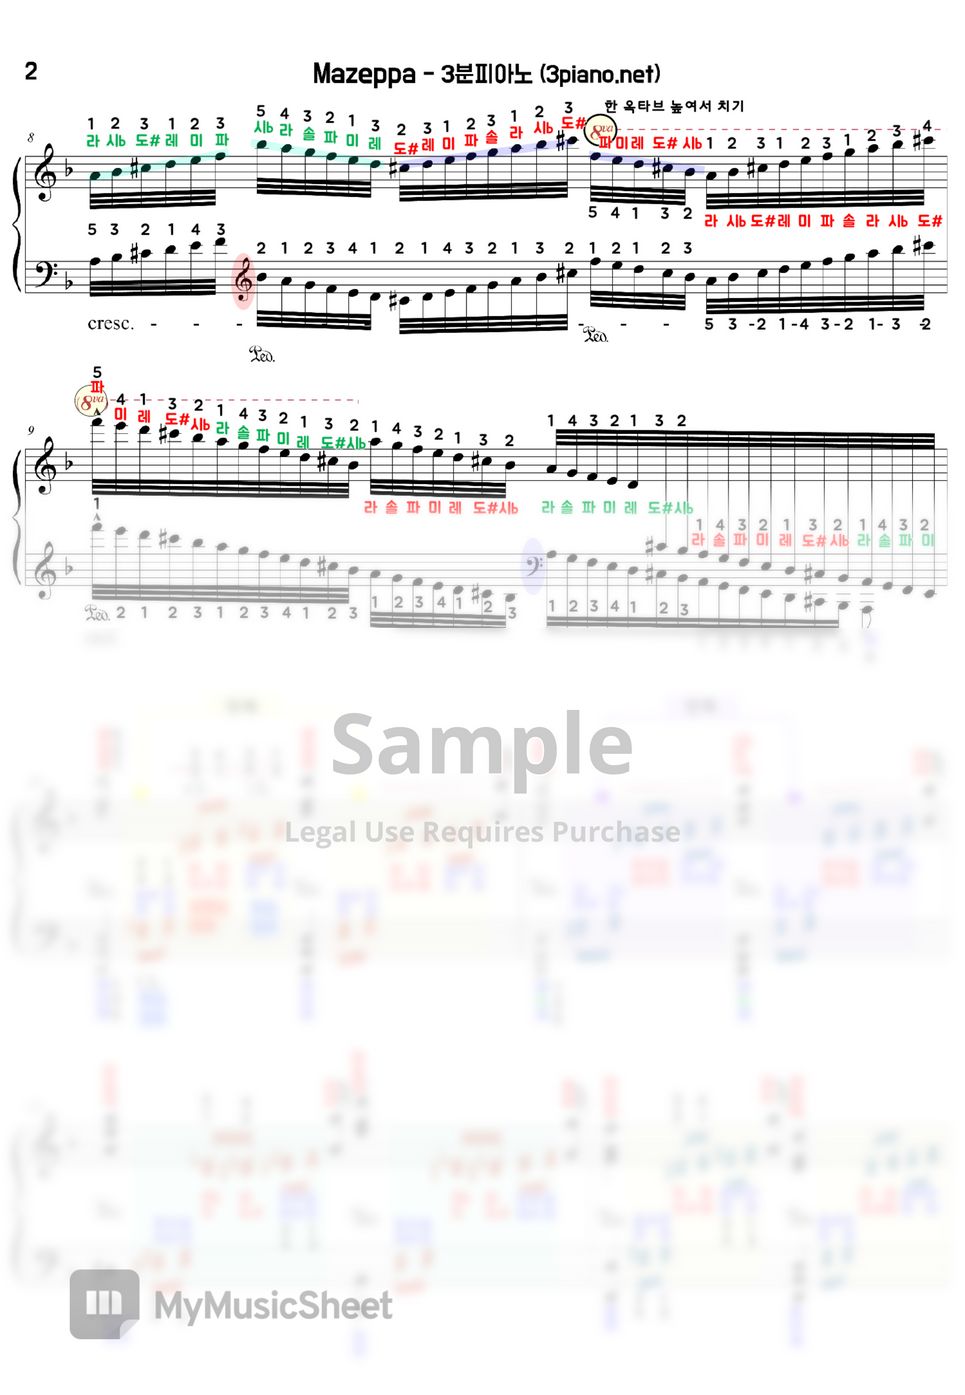 Liszt - Mazeppa 마제파 (앞부분만) (계이름악보) by 3분피아노